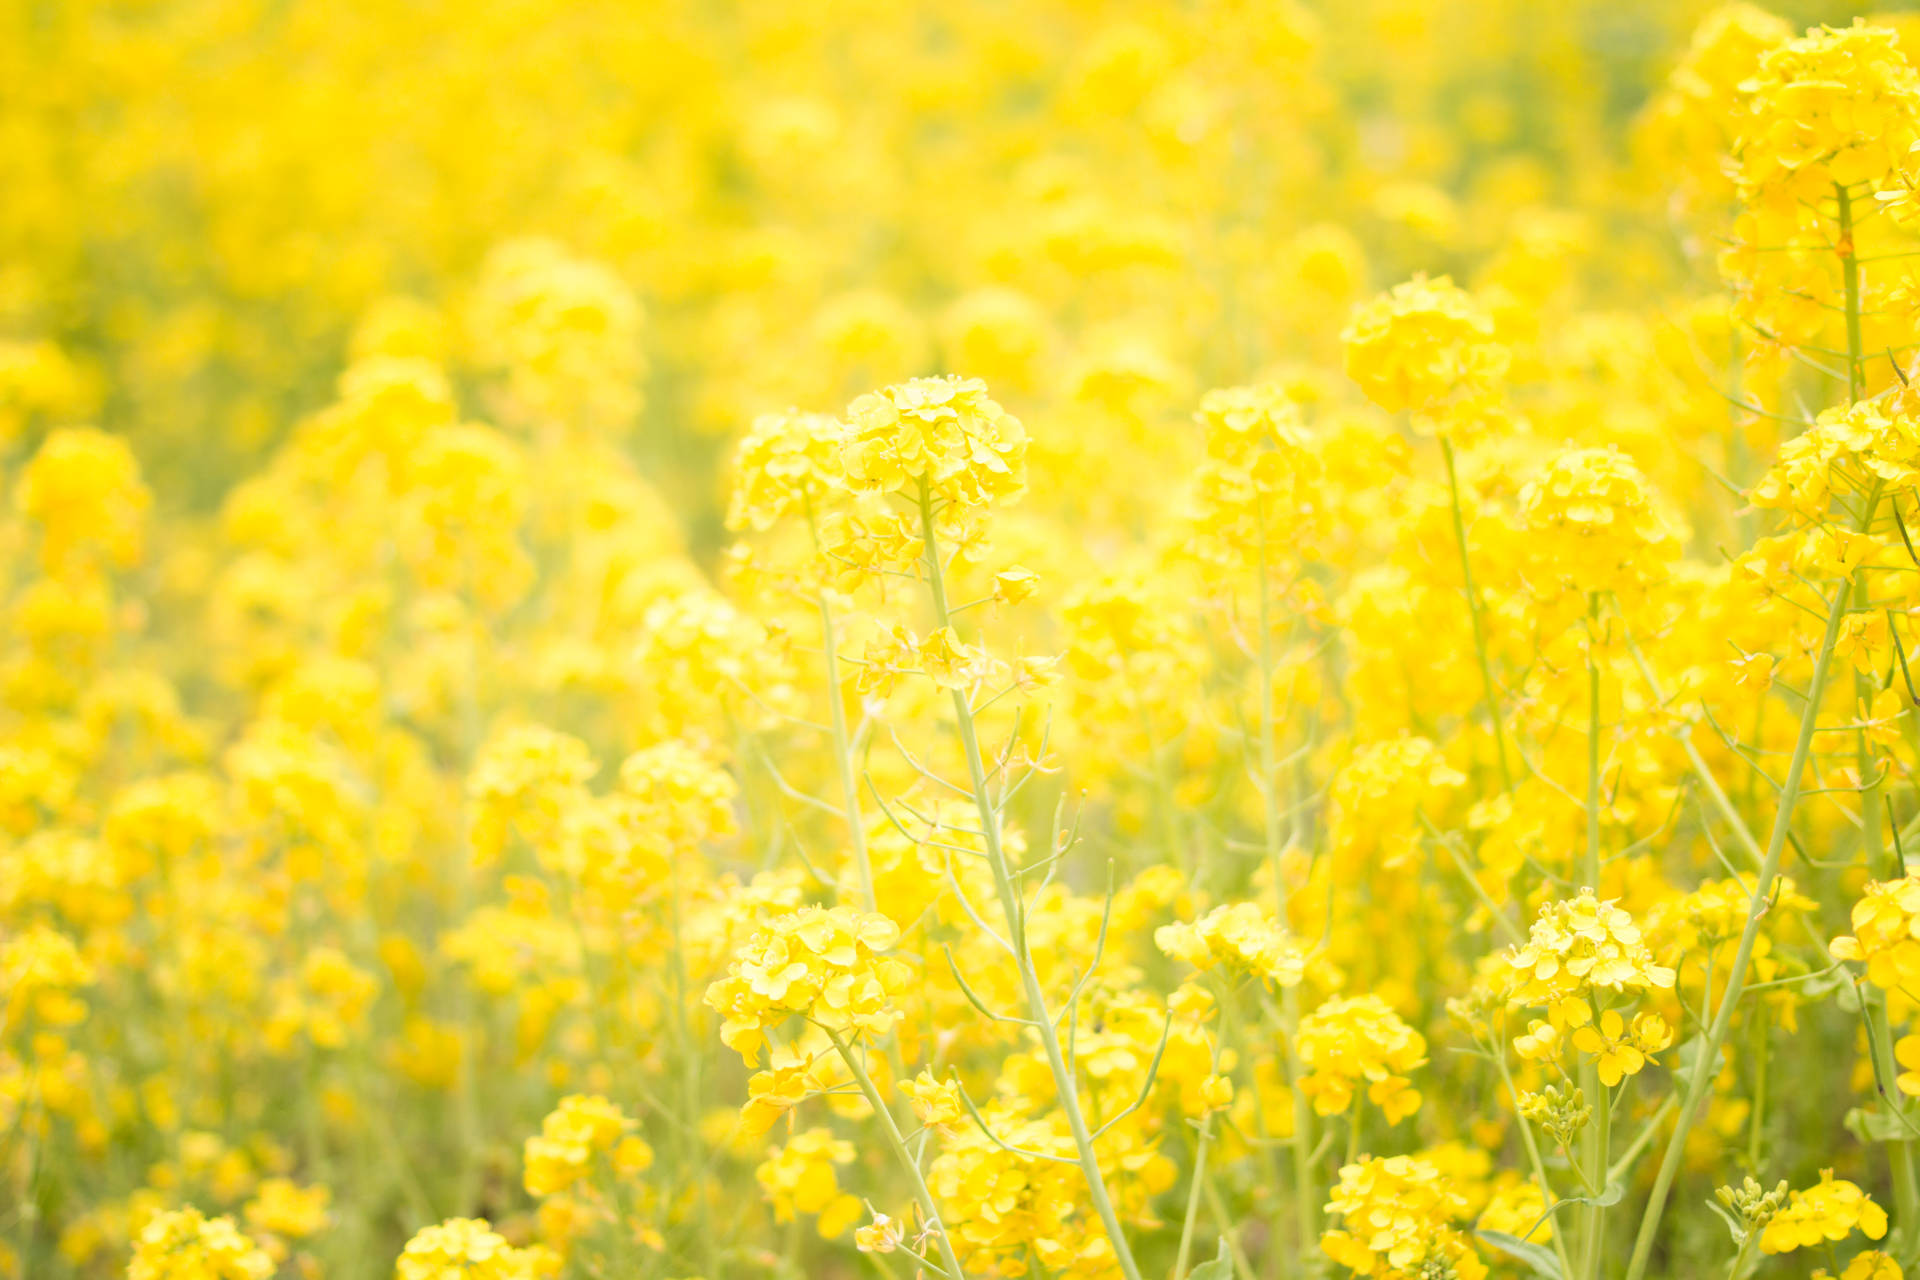 Dreamy Yellow Flower Field Wallpaper